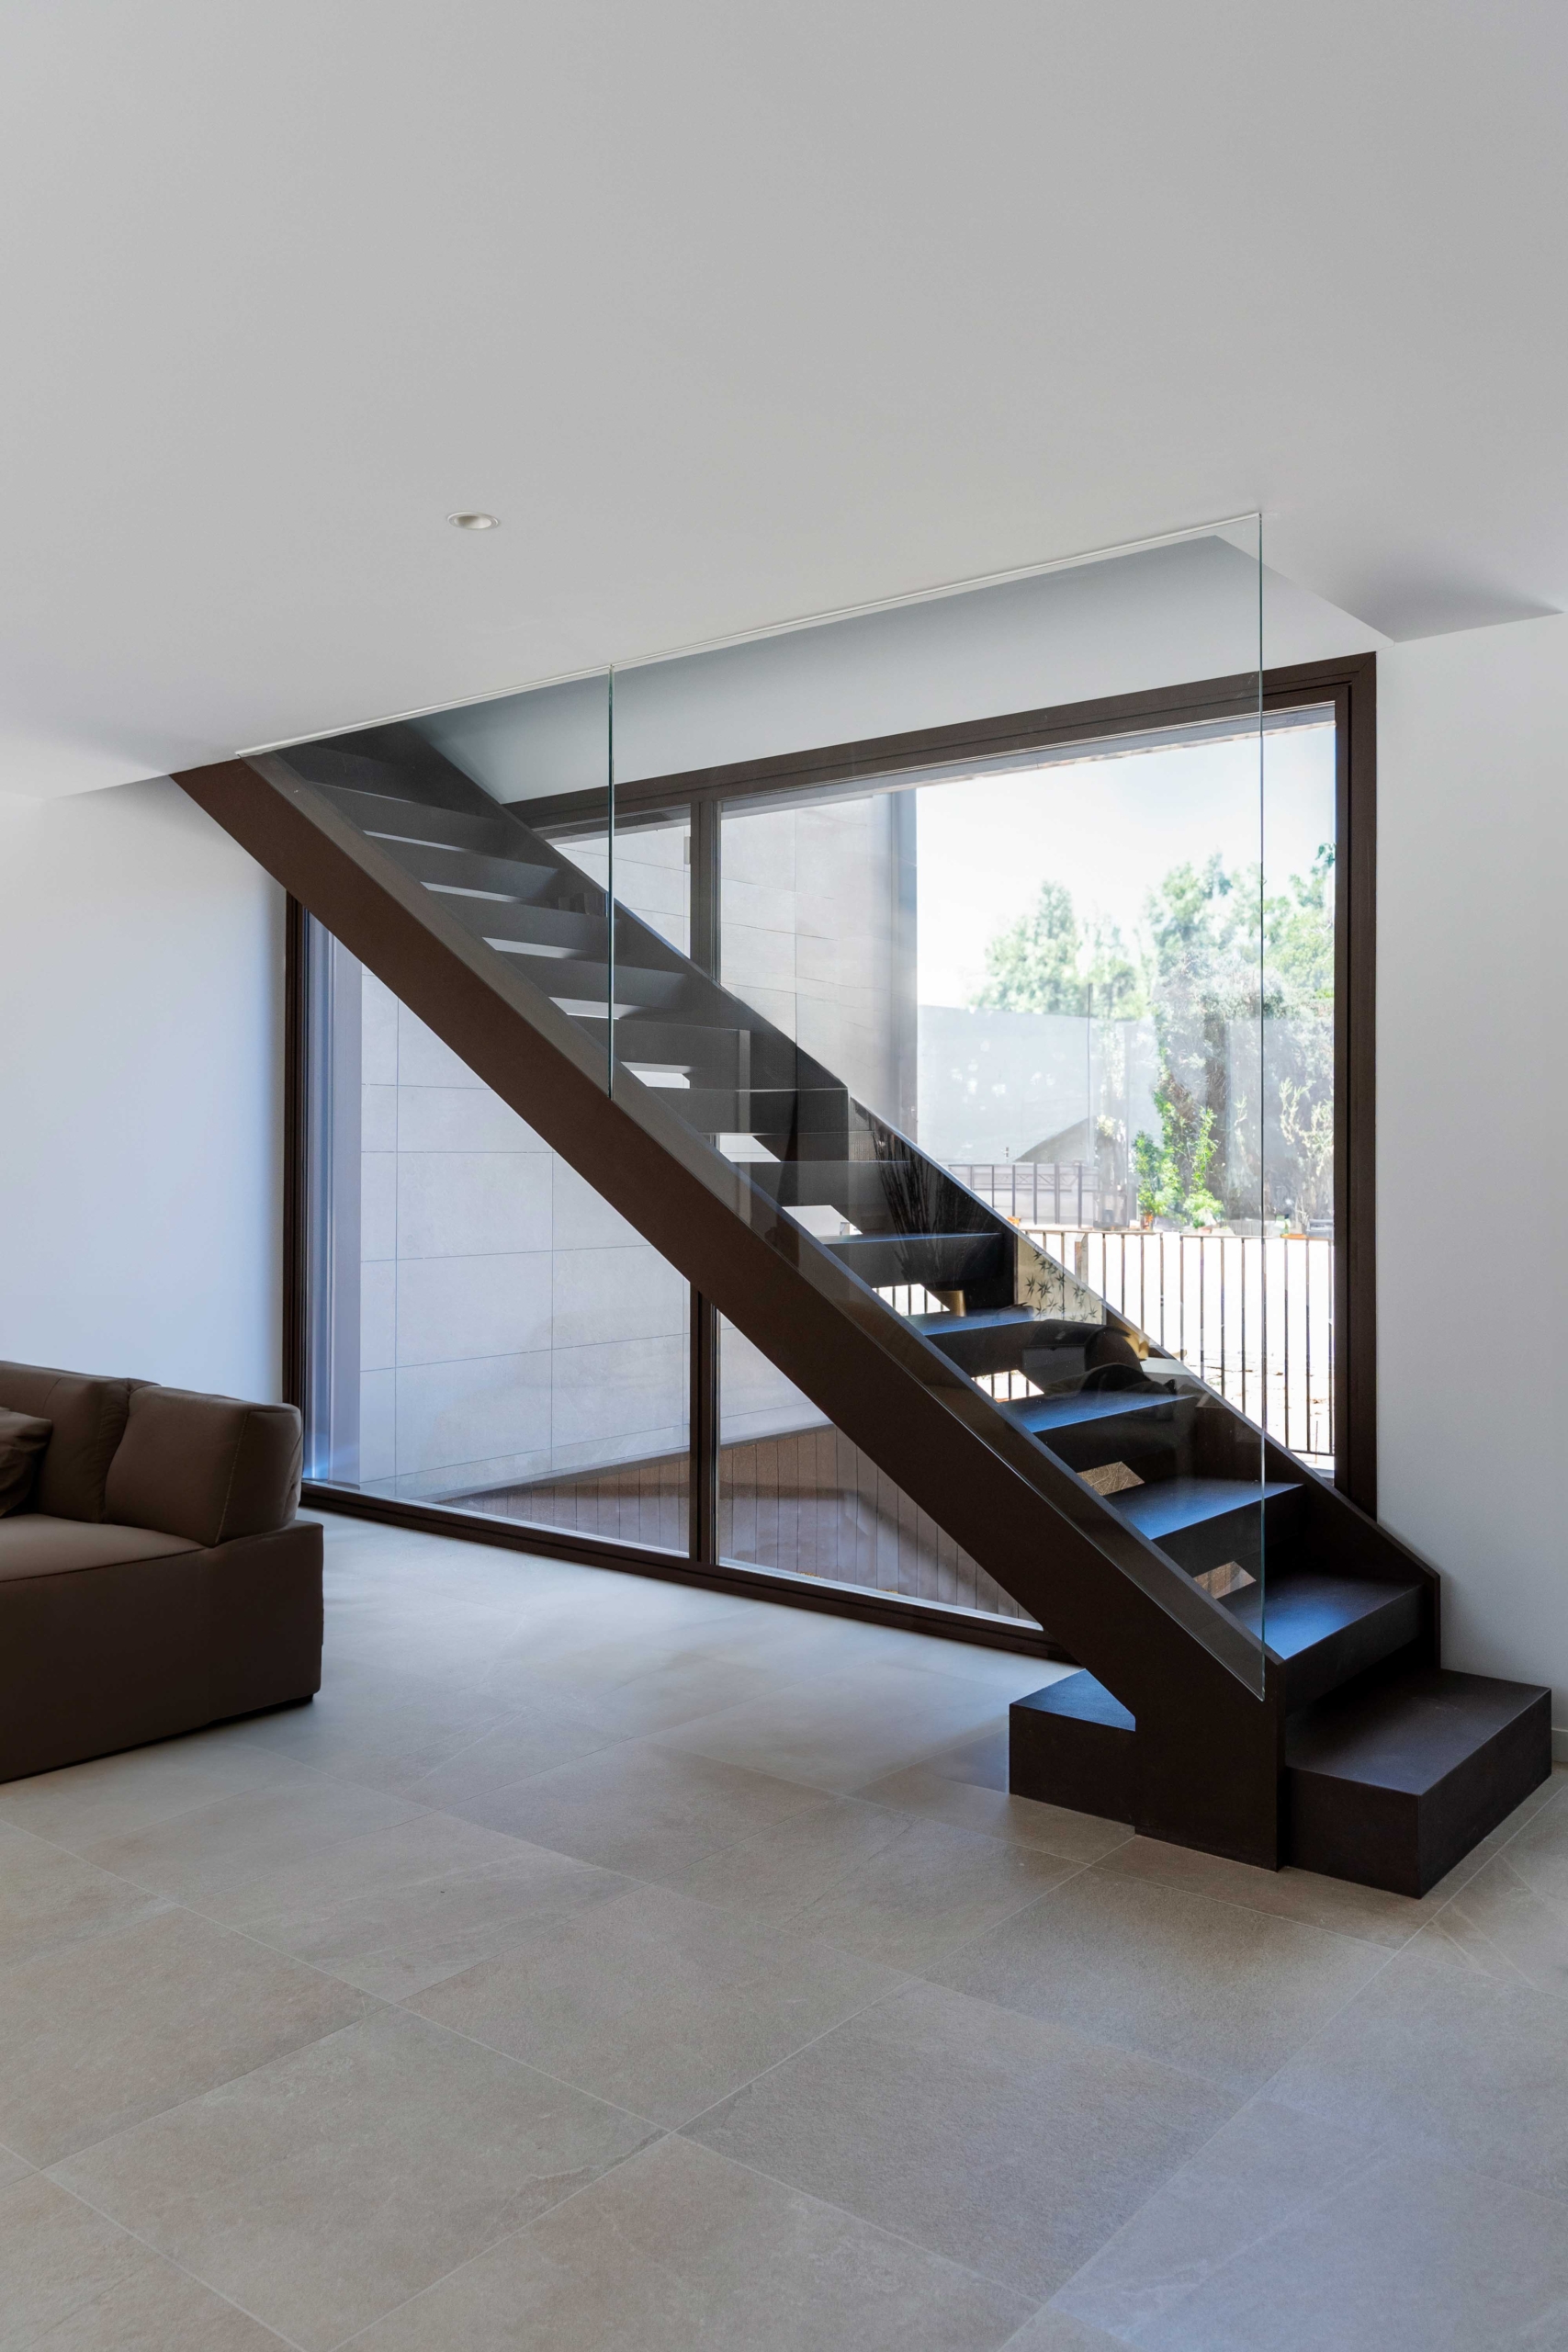 Diseño de interior moderno en casa de lujo, escaleras centradas voladas